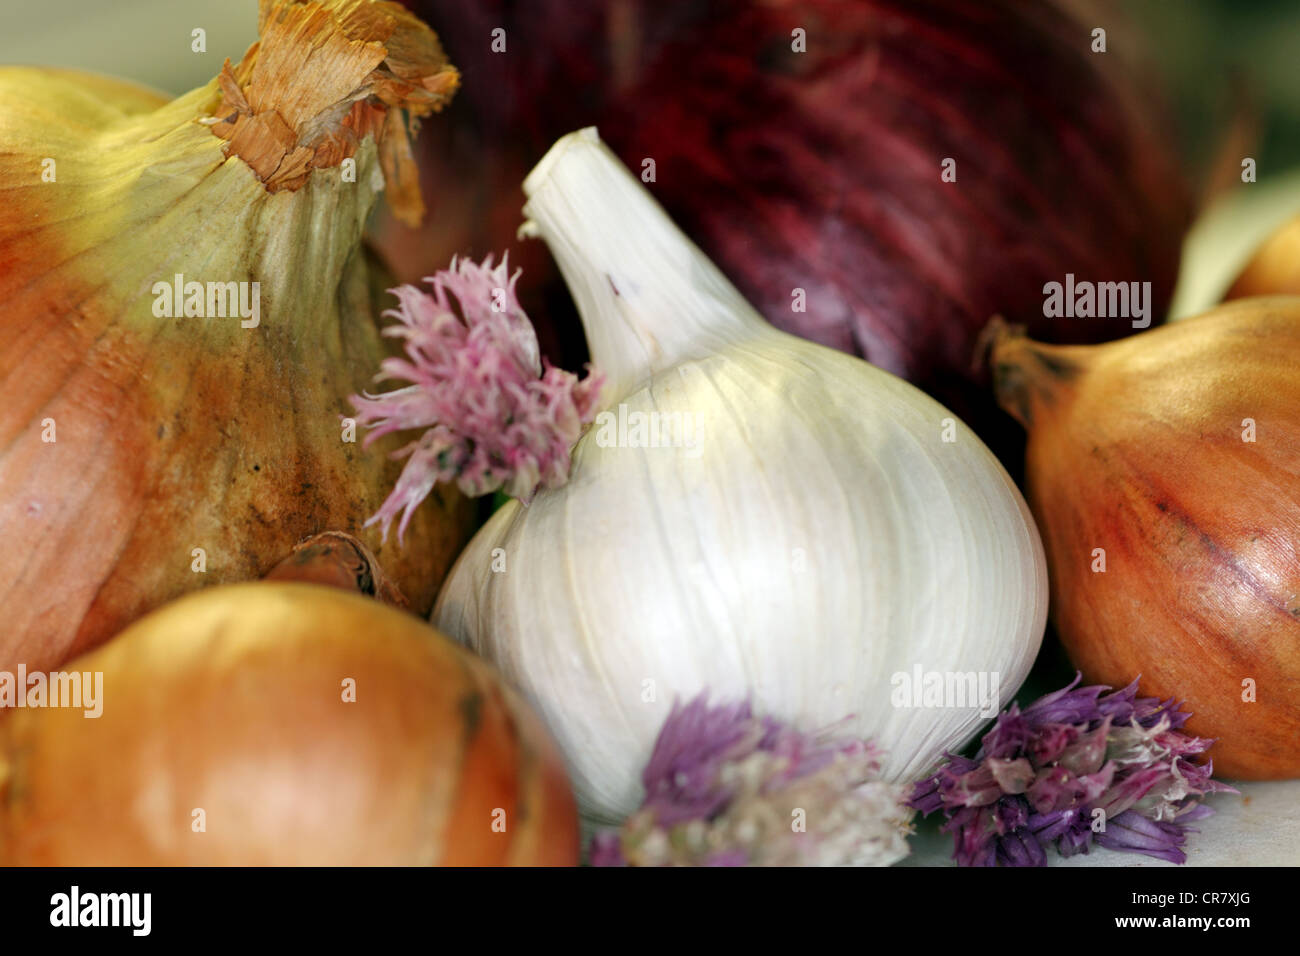 Allium assortment Stock Photo